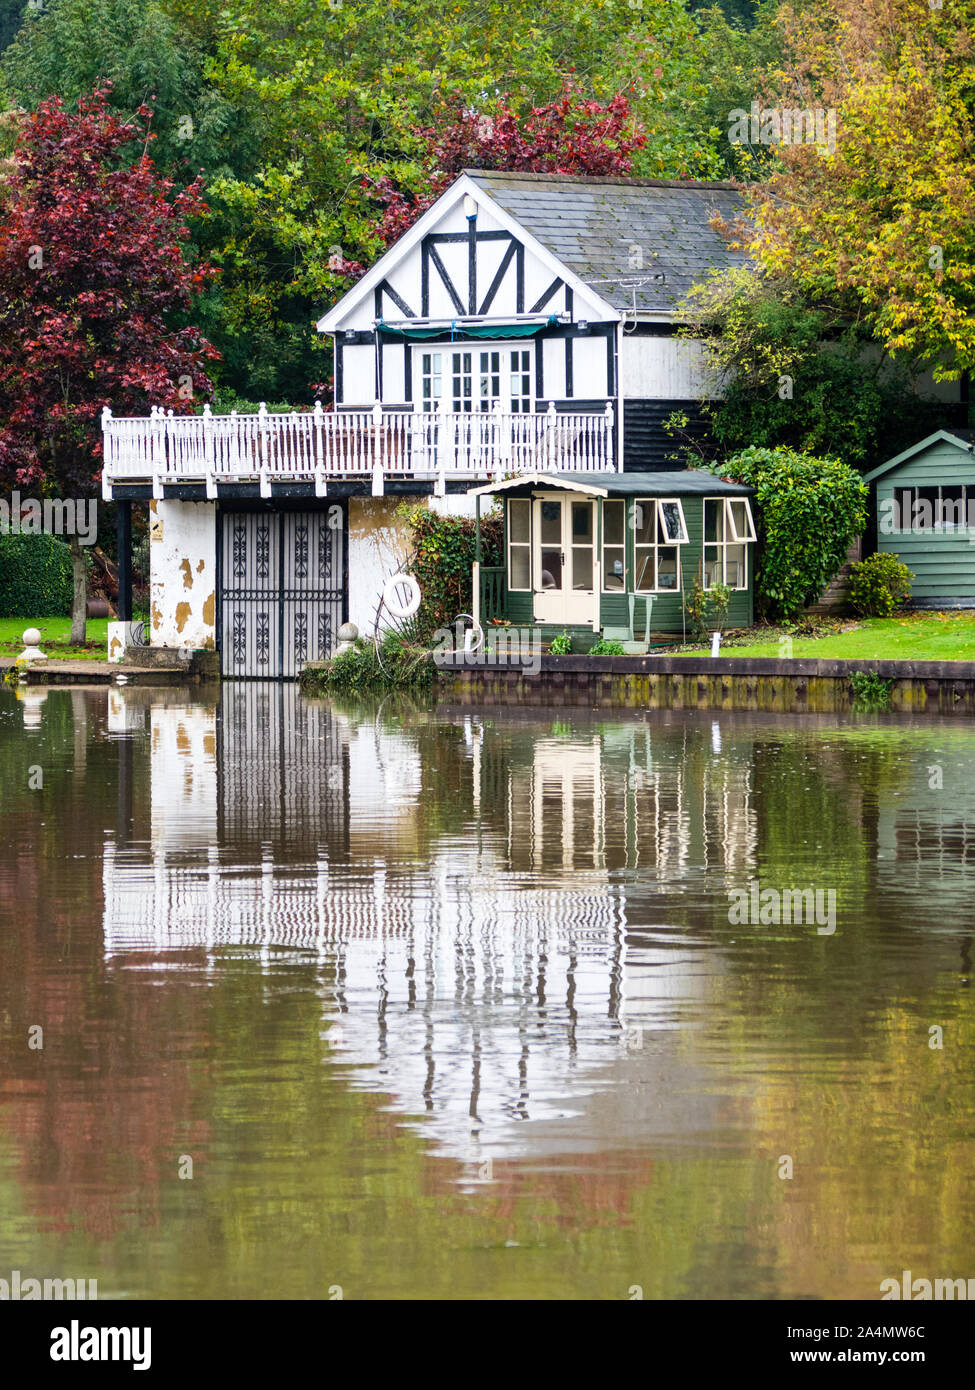 House with Boathouse, Autumn Landscape, River Thames, Caversham, Reading, Berkshire, England, UK, GB. Stock Photo